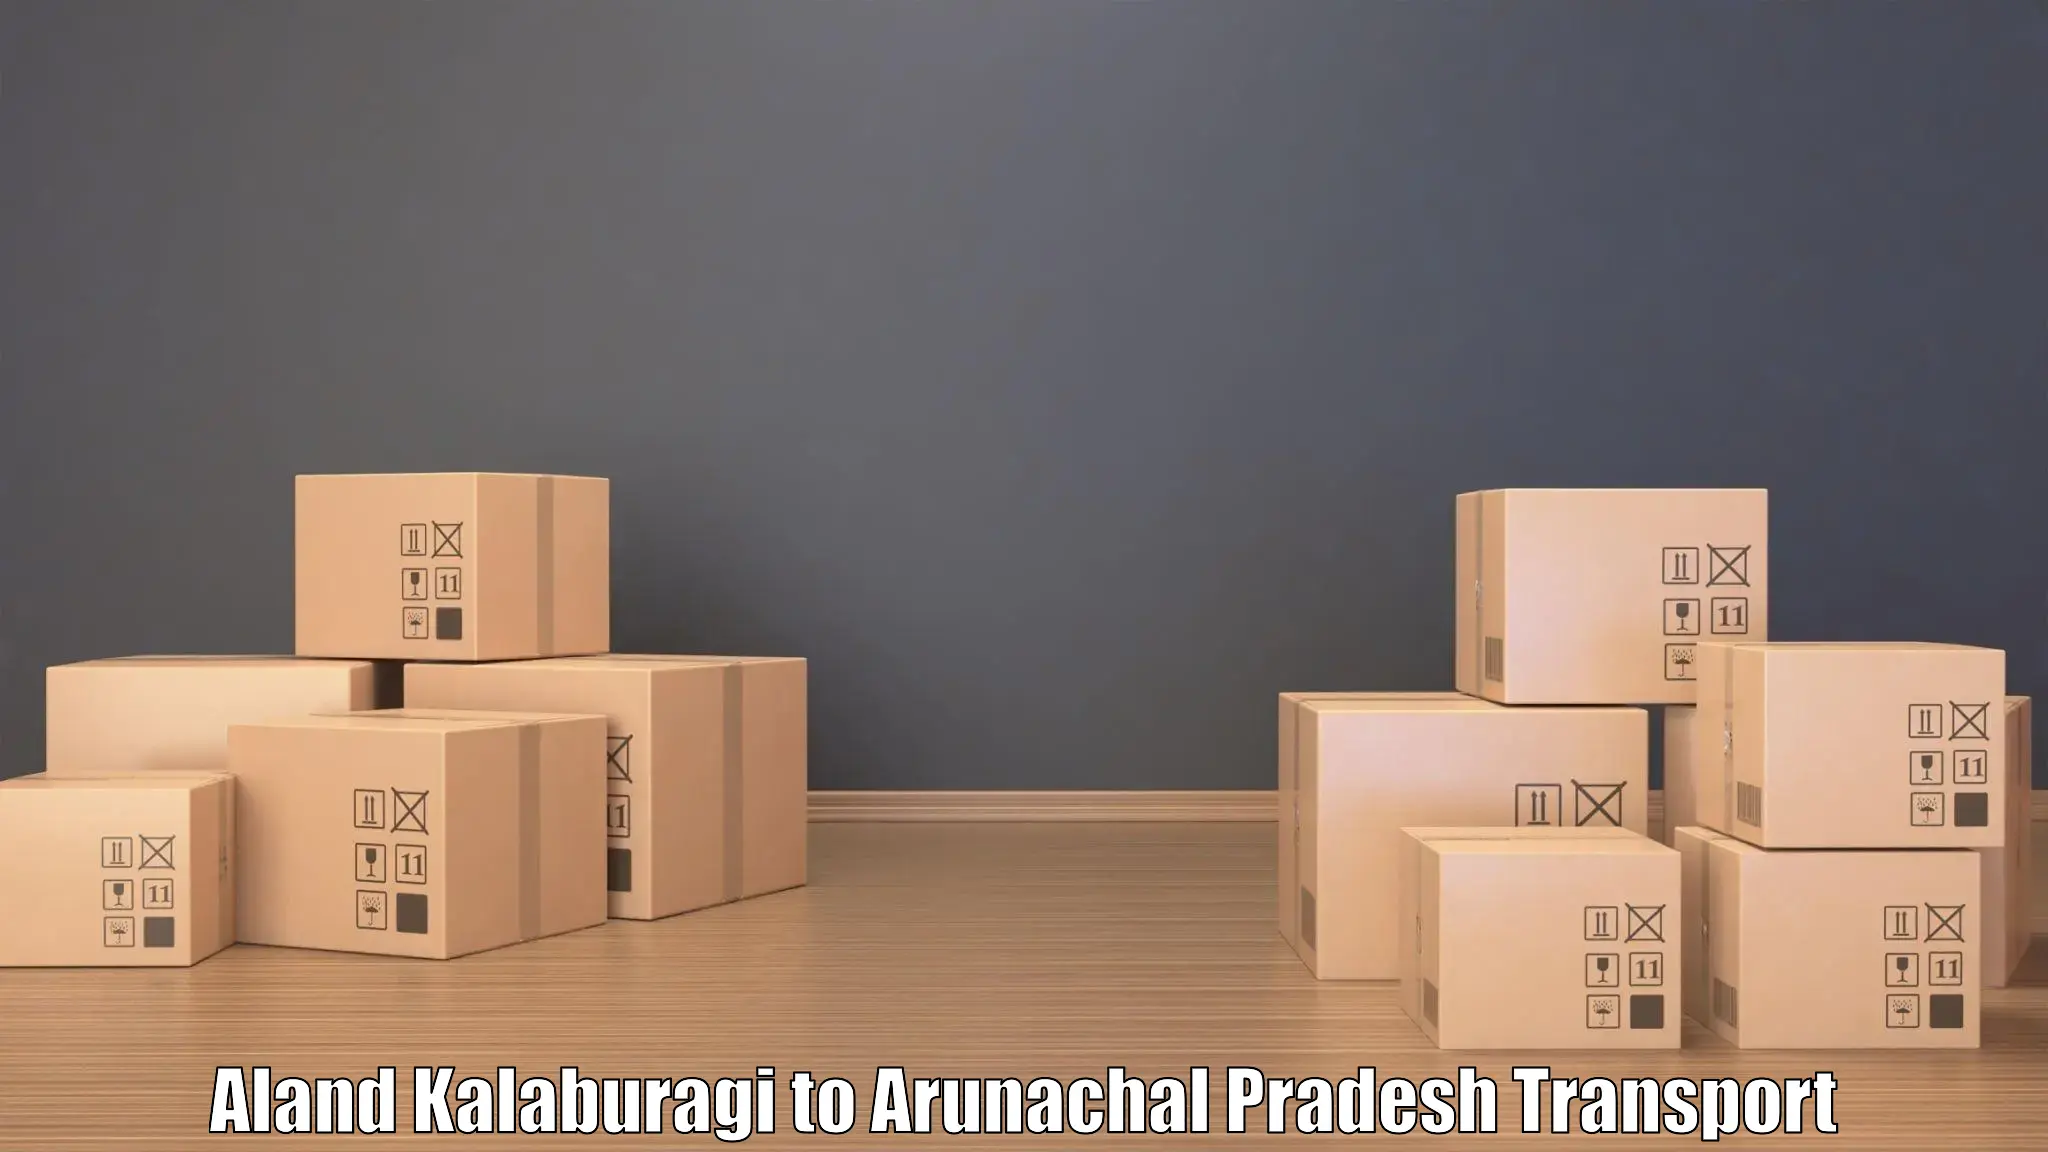 Daily parcel service transport Aland Kalaburagi to Jairampur